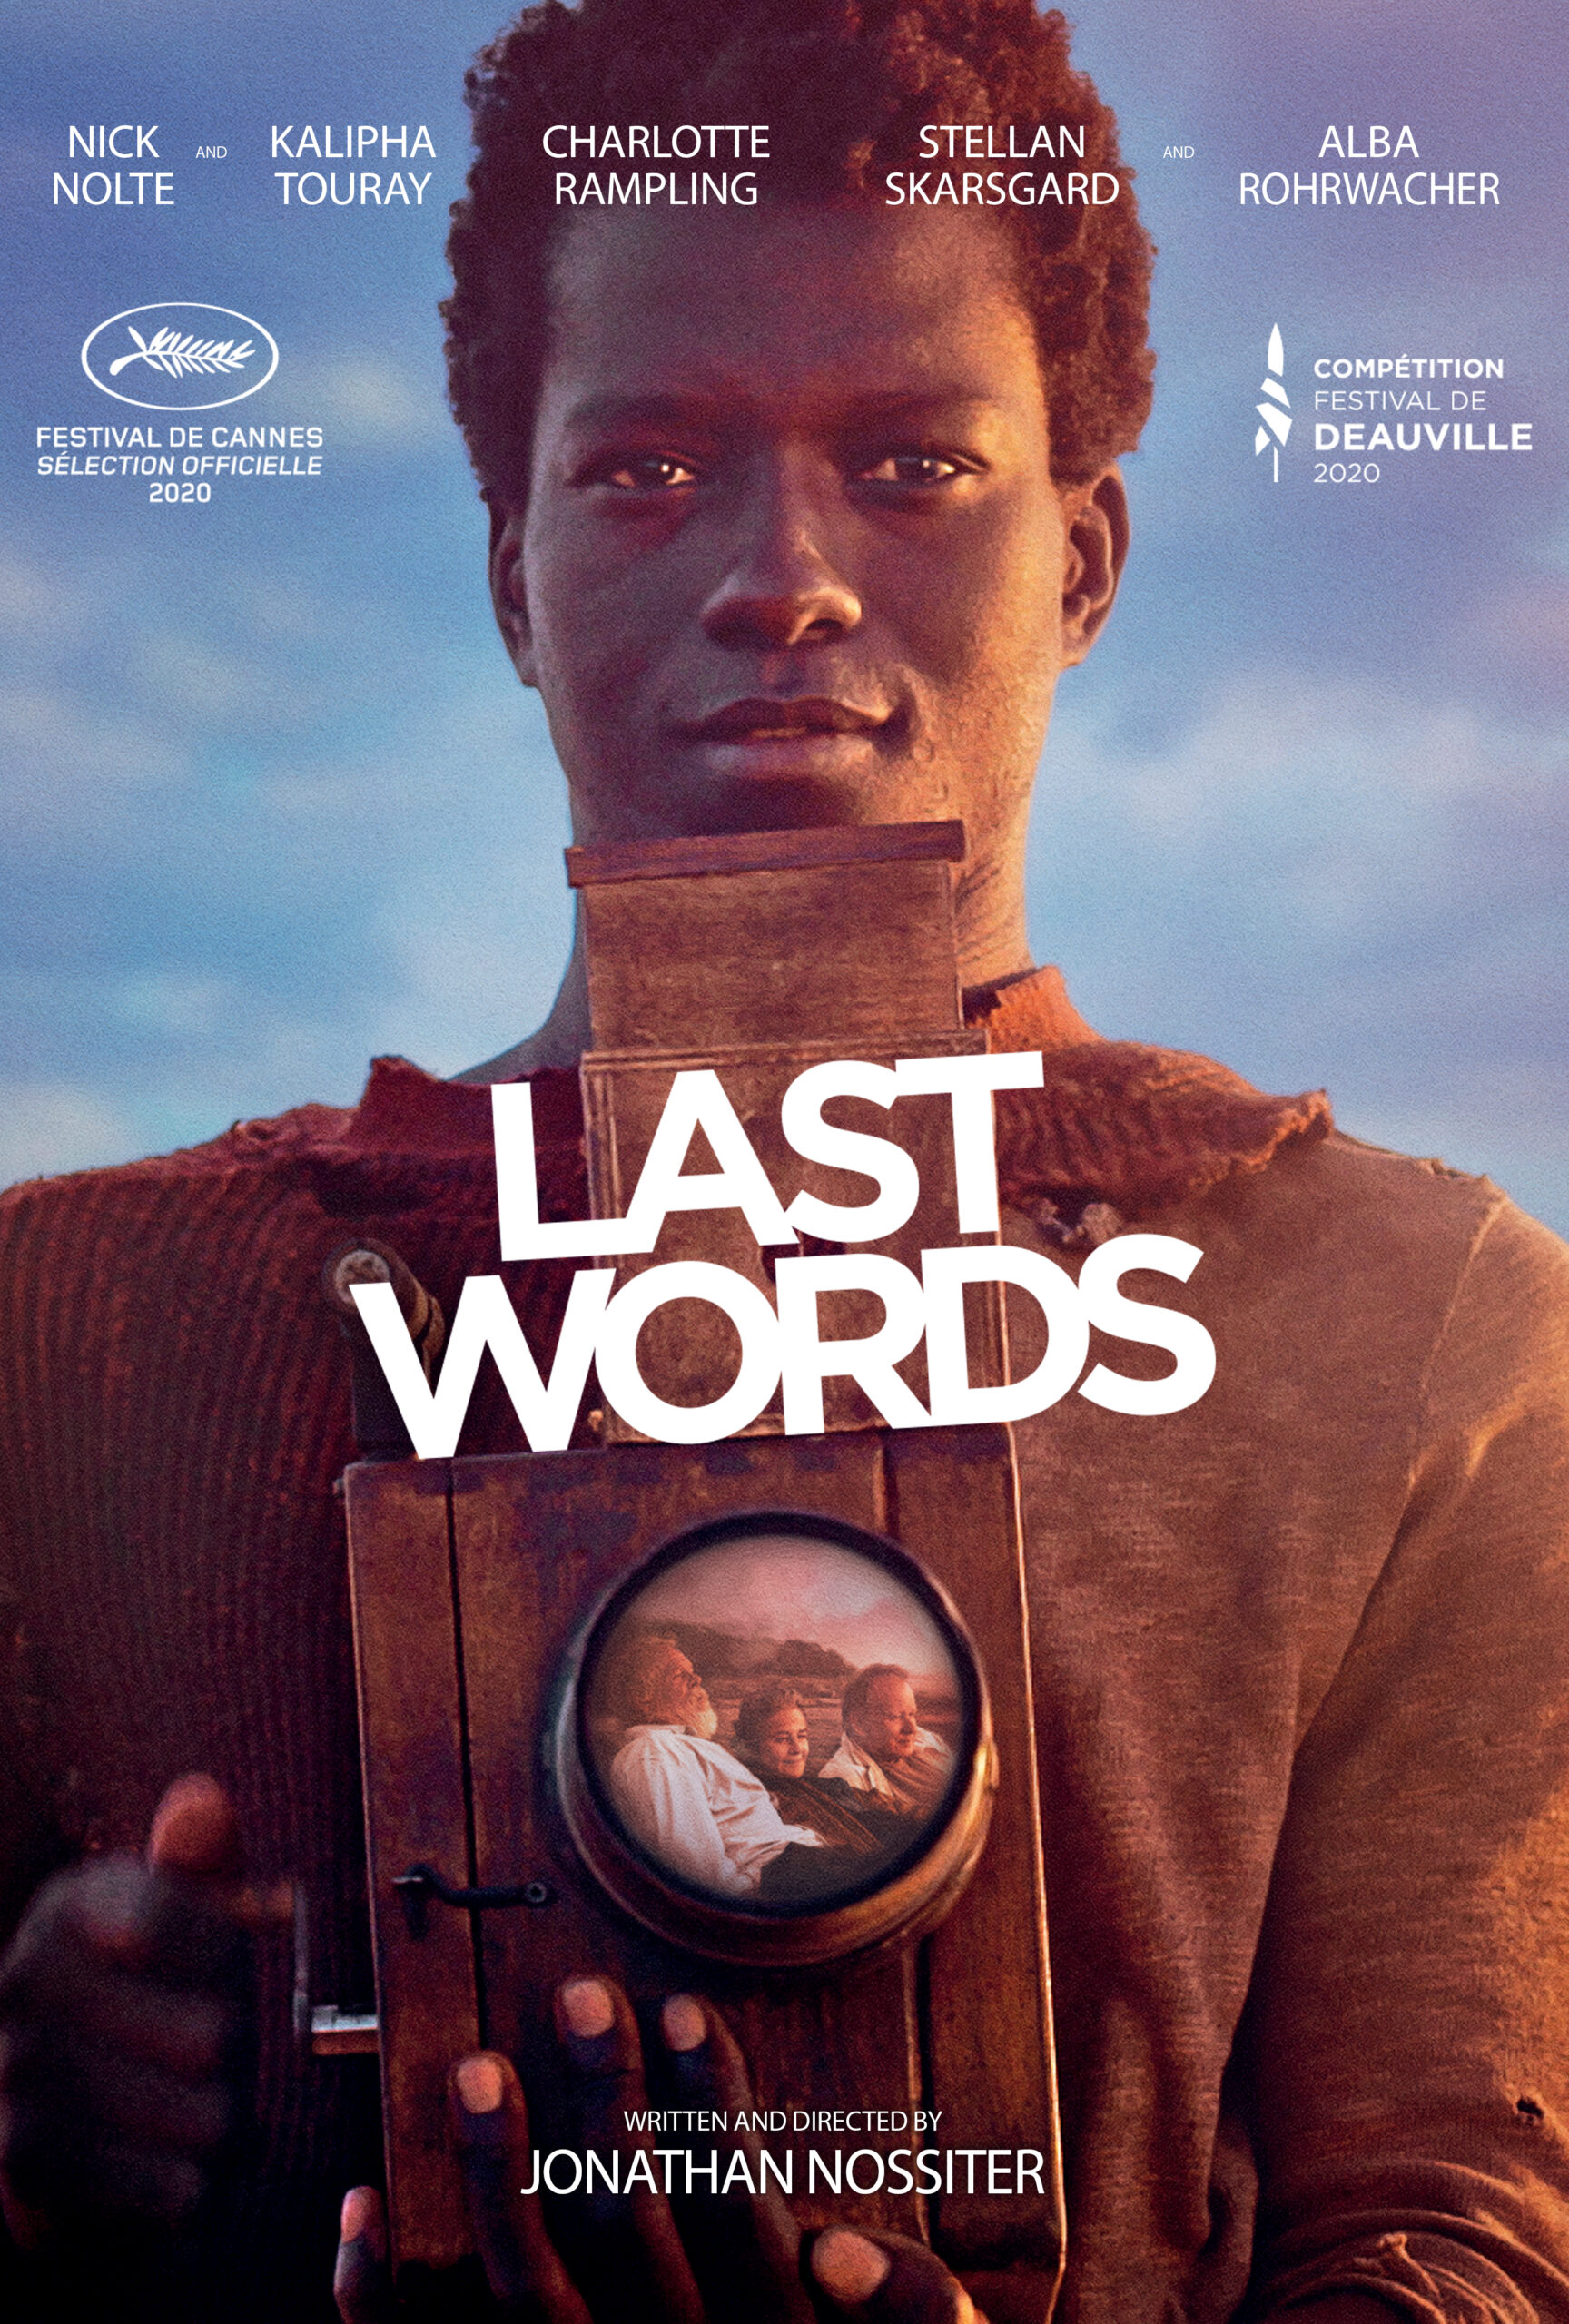 ดูหนังออนไลน์ฟรี Last Words (2020) ลาสท์ เวิร์ดส์